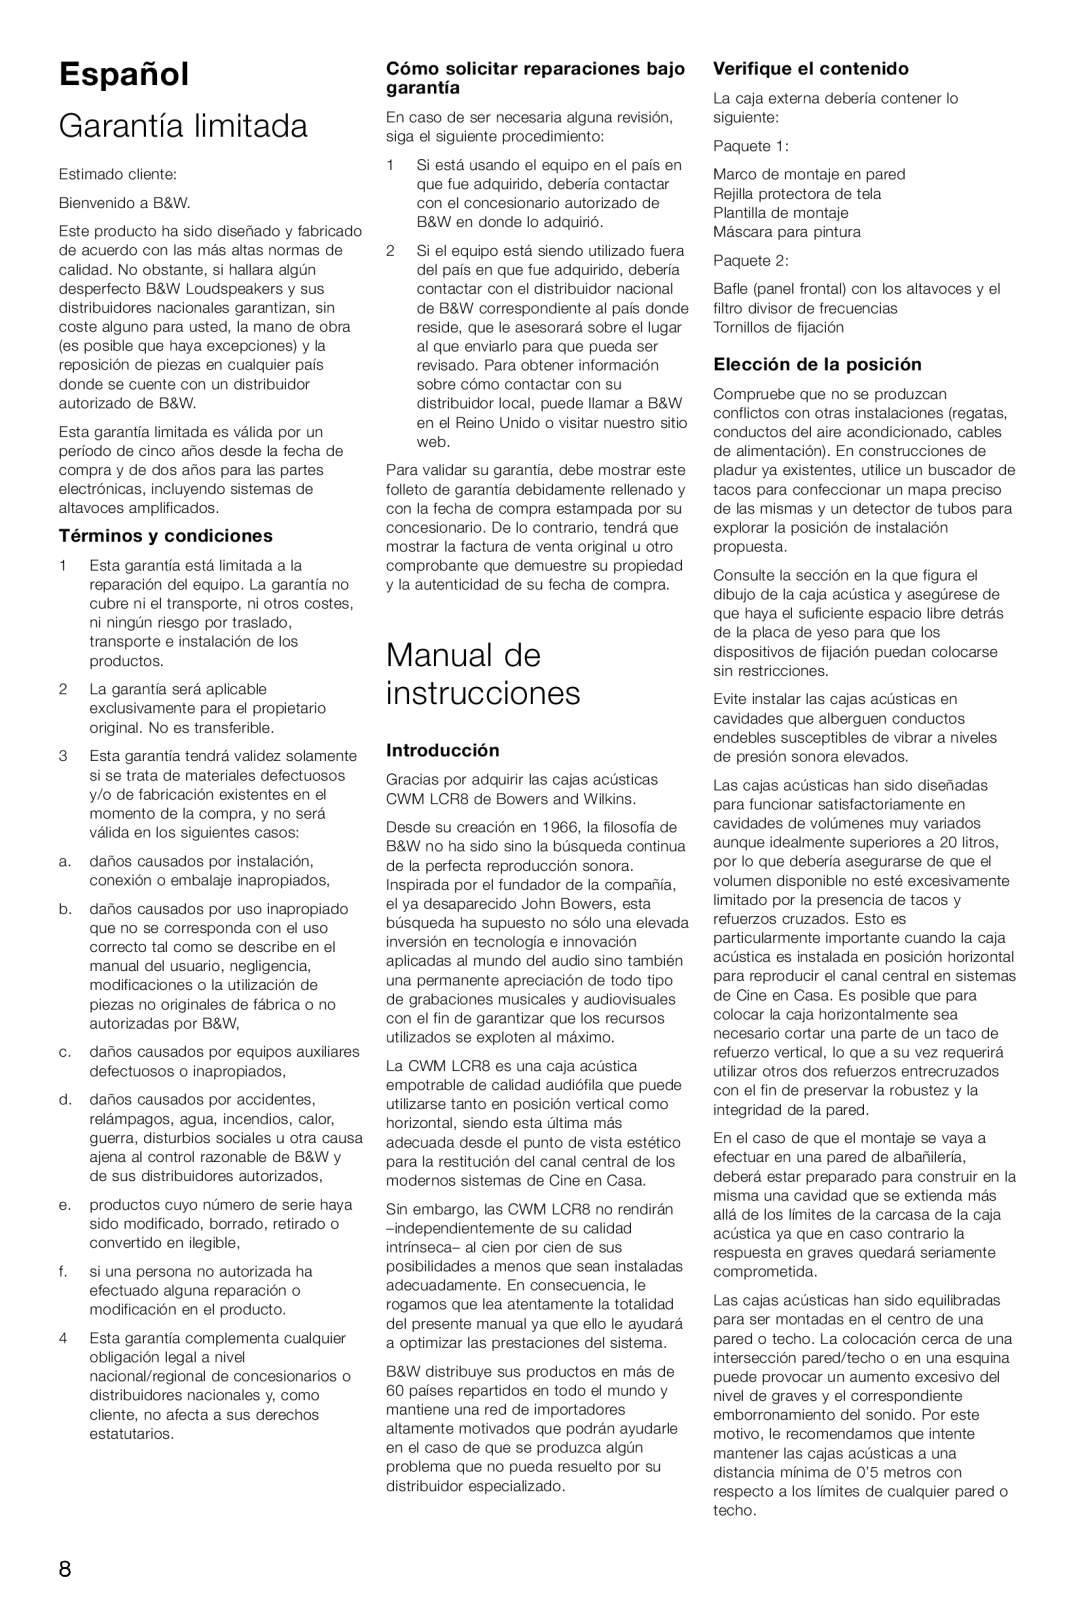 Bowers & Wilkins CWM-LCR8 Español, Garantía limitada, Manual de instrucciones, Términos y condiciones, Introducción 